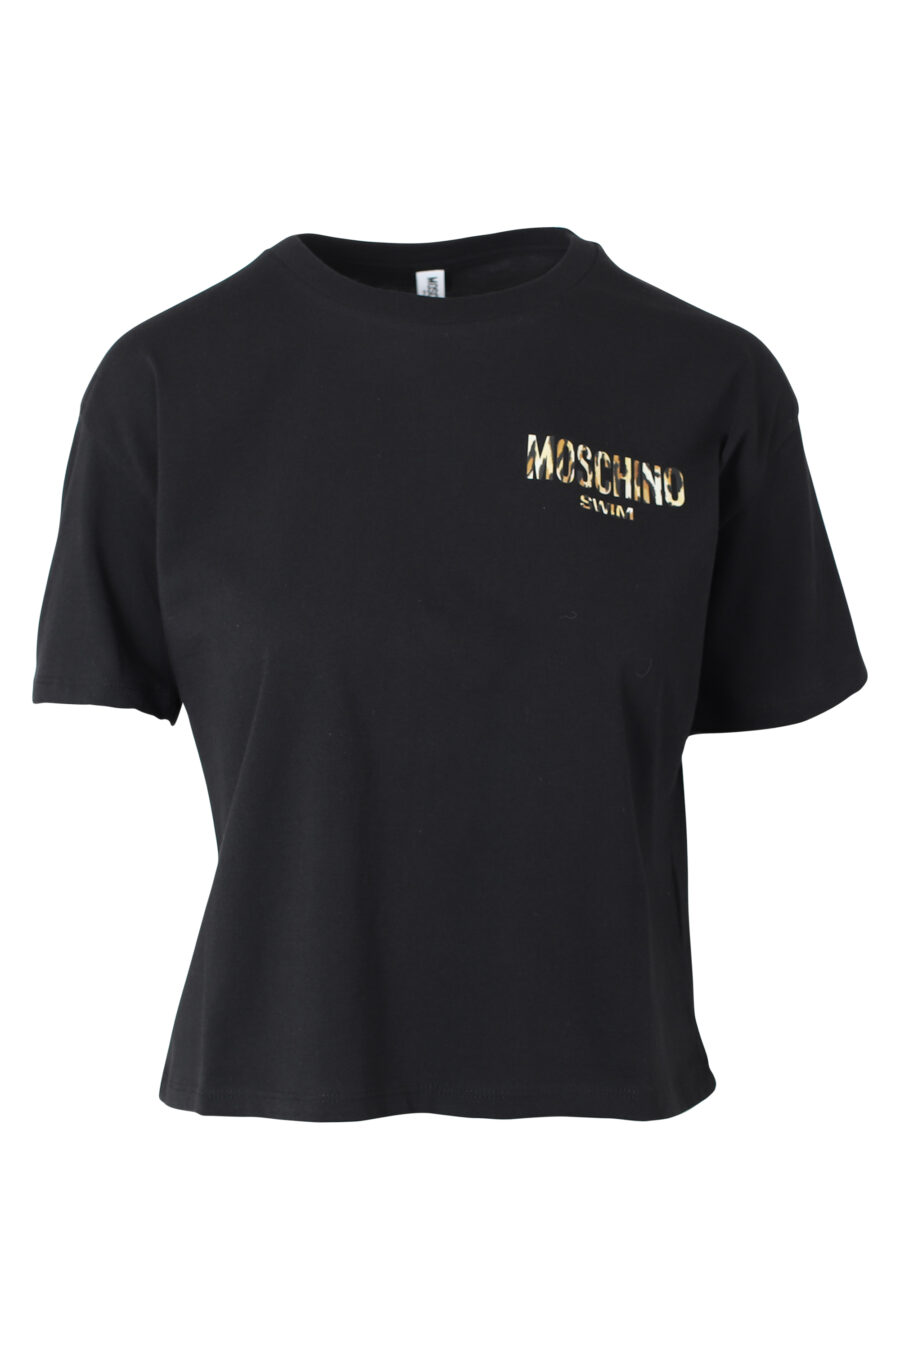 Schwarzes T-Shirt mit Minilogo im Tiermuster - IMG 9802